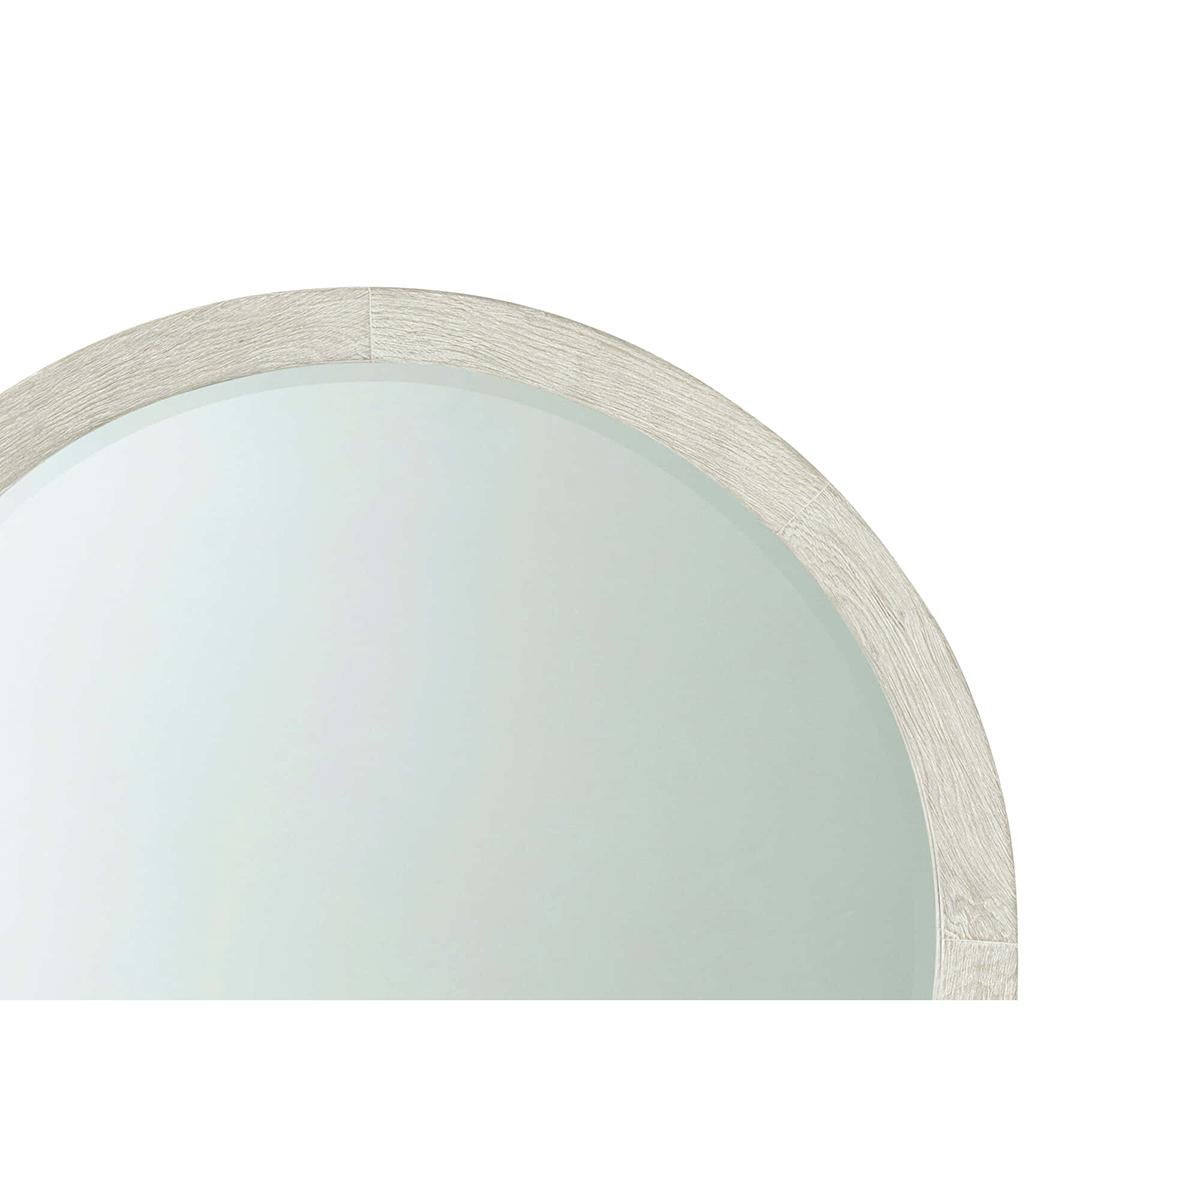 Miroir rond moderne et côtier, Inspiré d'un design moderne et organique, ce miroir rond est fabriqué à partir de bois de pin cérusé brossé dans notre nouvelle finition Sel de mer et offre un regard neuf sur une silhouette classique.
Dimensions :